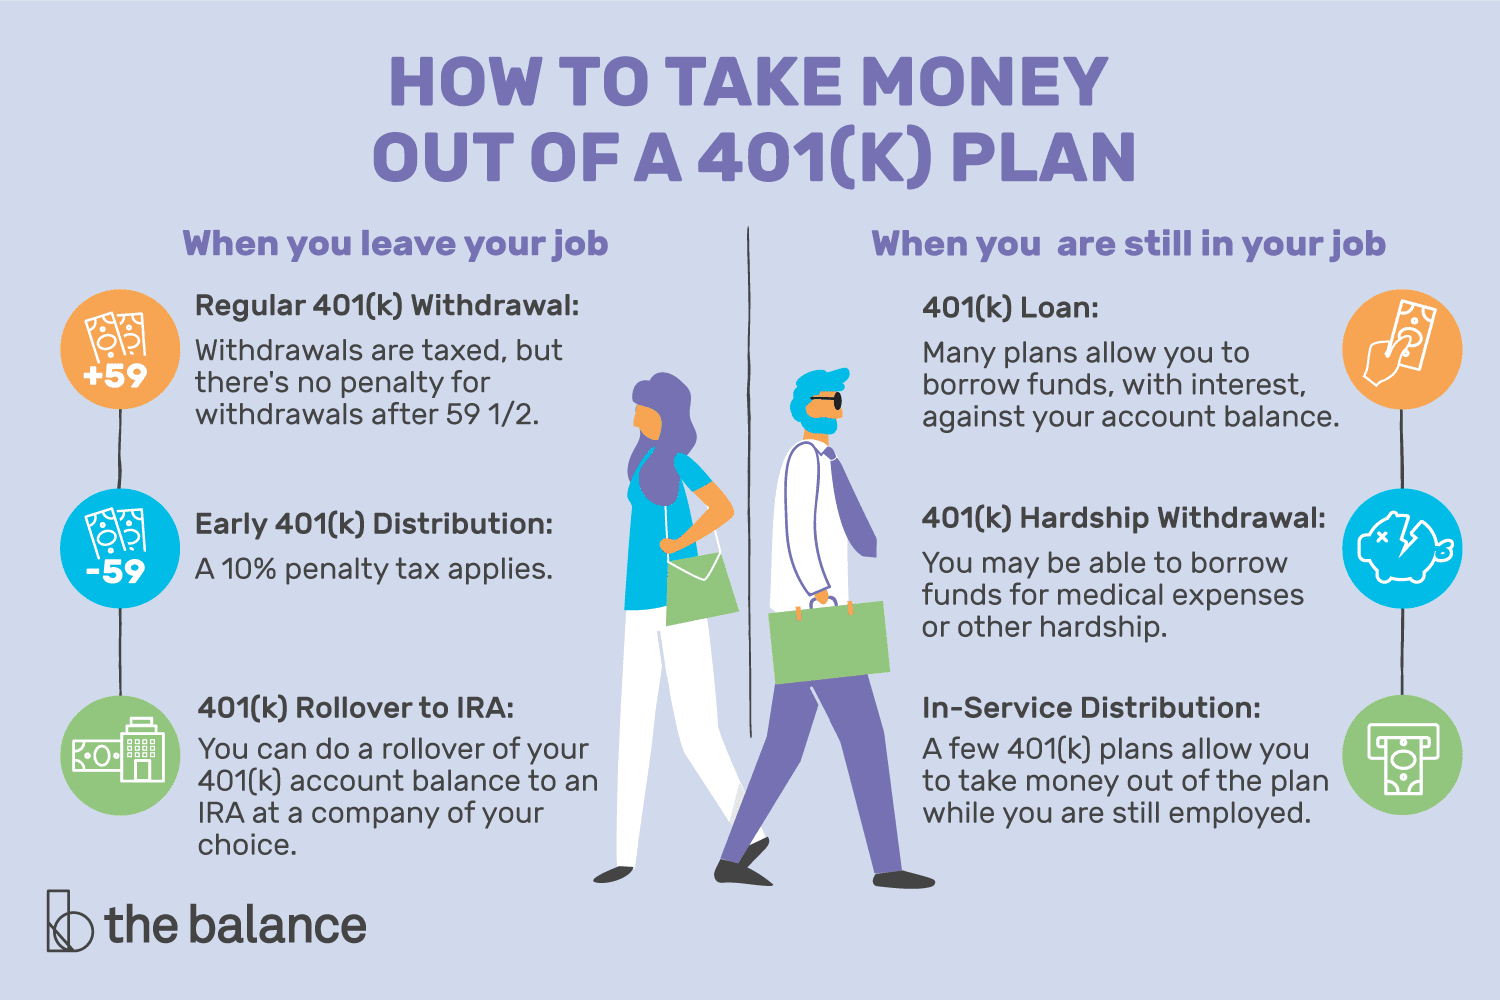 How Do I Get A 401k Plan